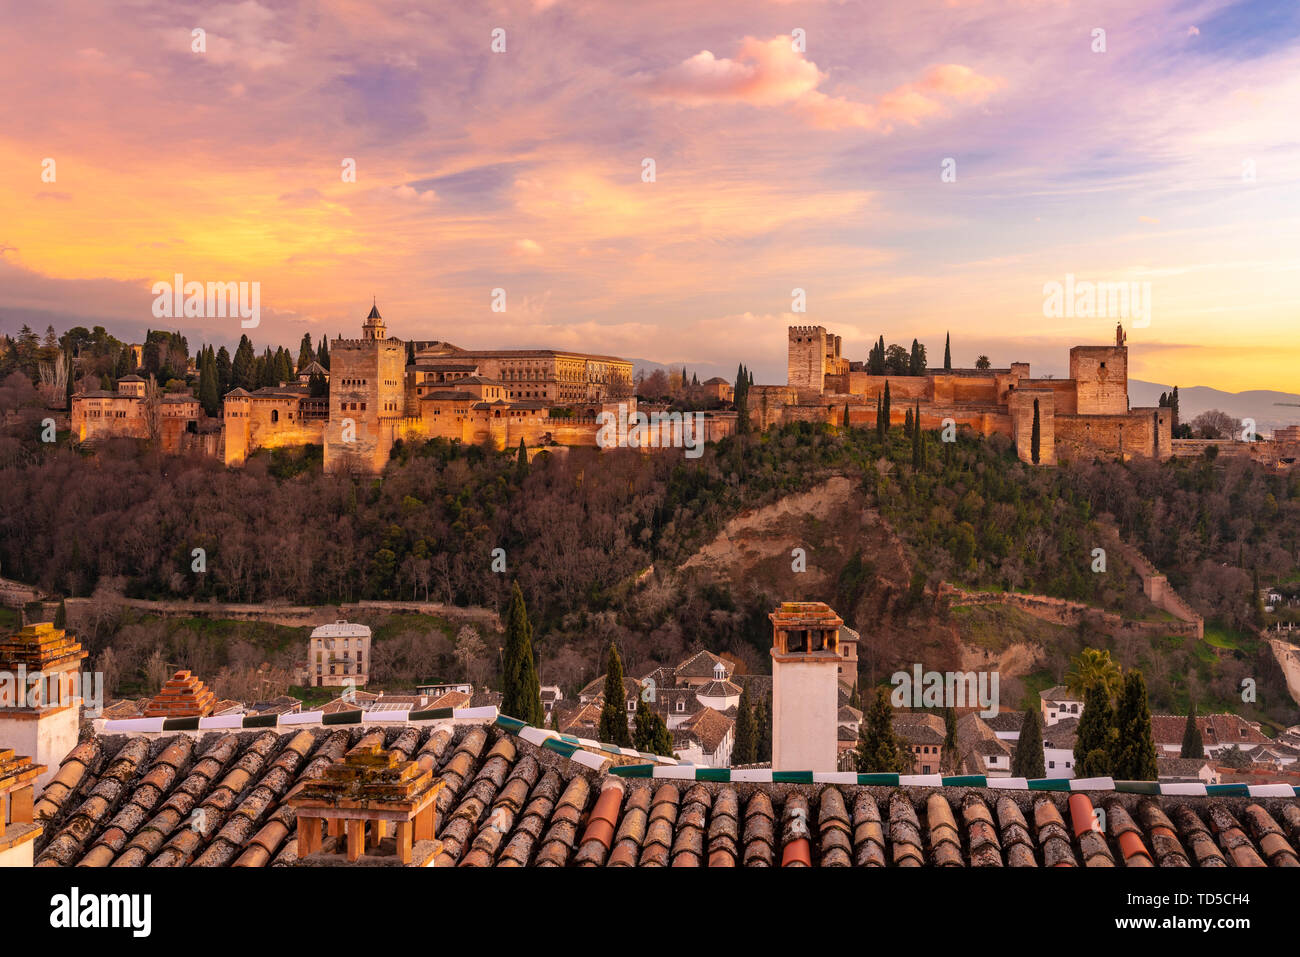 Vue de l'Alhambra, Site du patrimoine mondial de l'UNESCO, avec les montagnes de la Sierra Nevada en arrière-plan, au coucher du soleil, Grenade, Andalousie, Espagne, Europe Banque D'Images